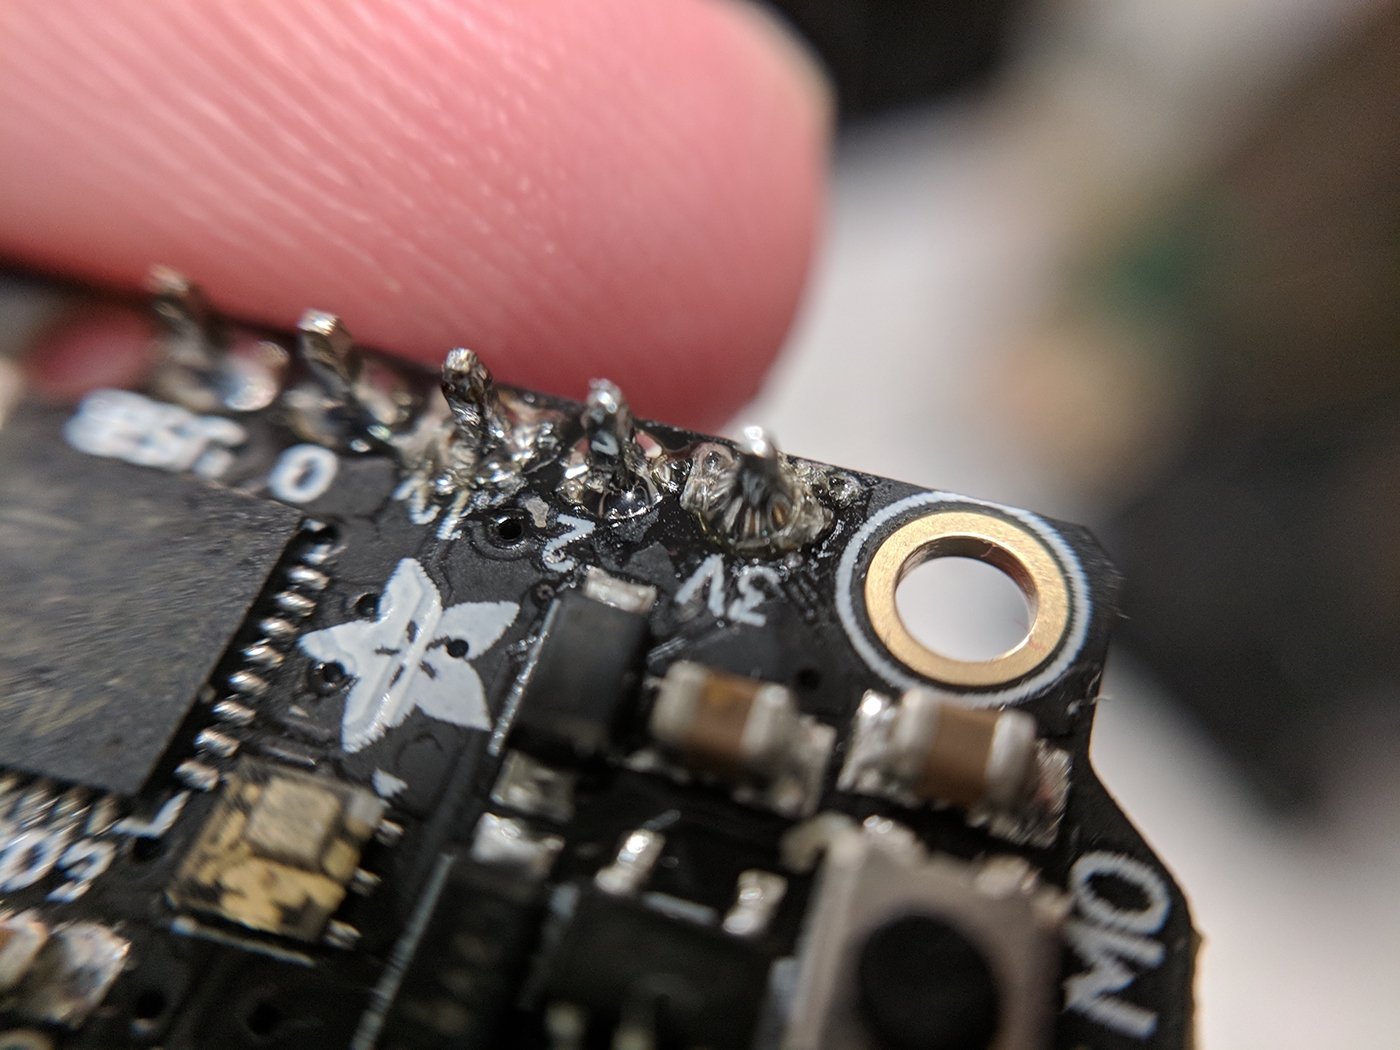 micro electronics microcontroller sbc Arduino Adafruit signal processing